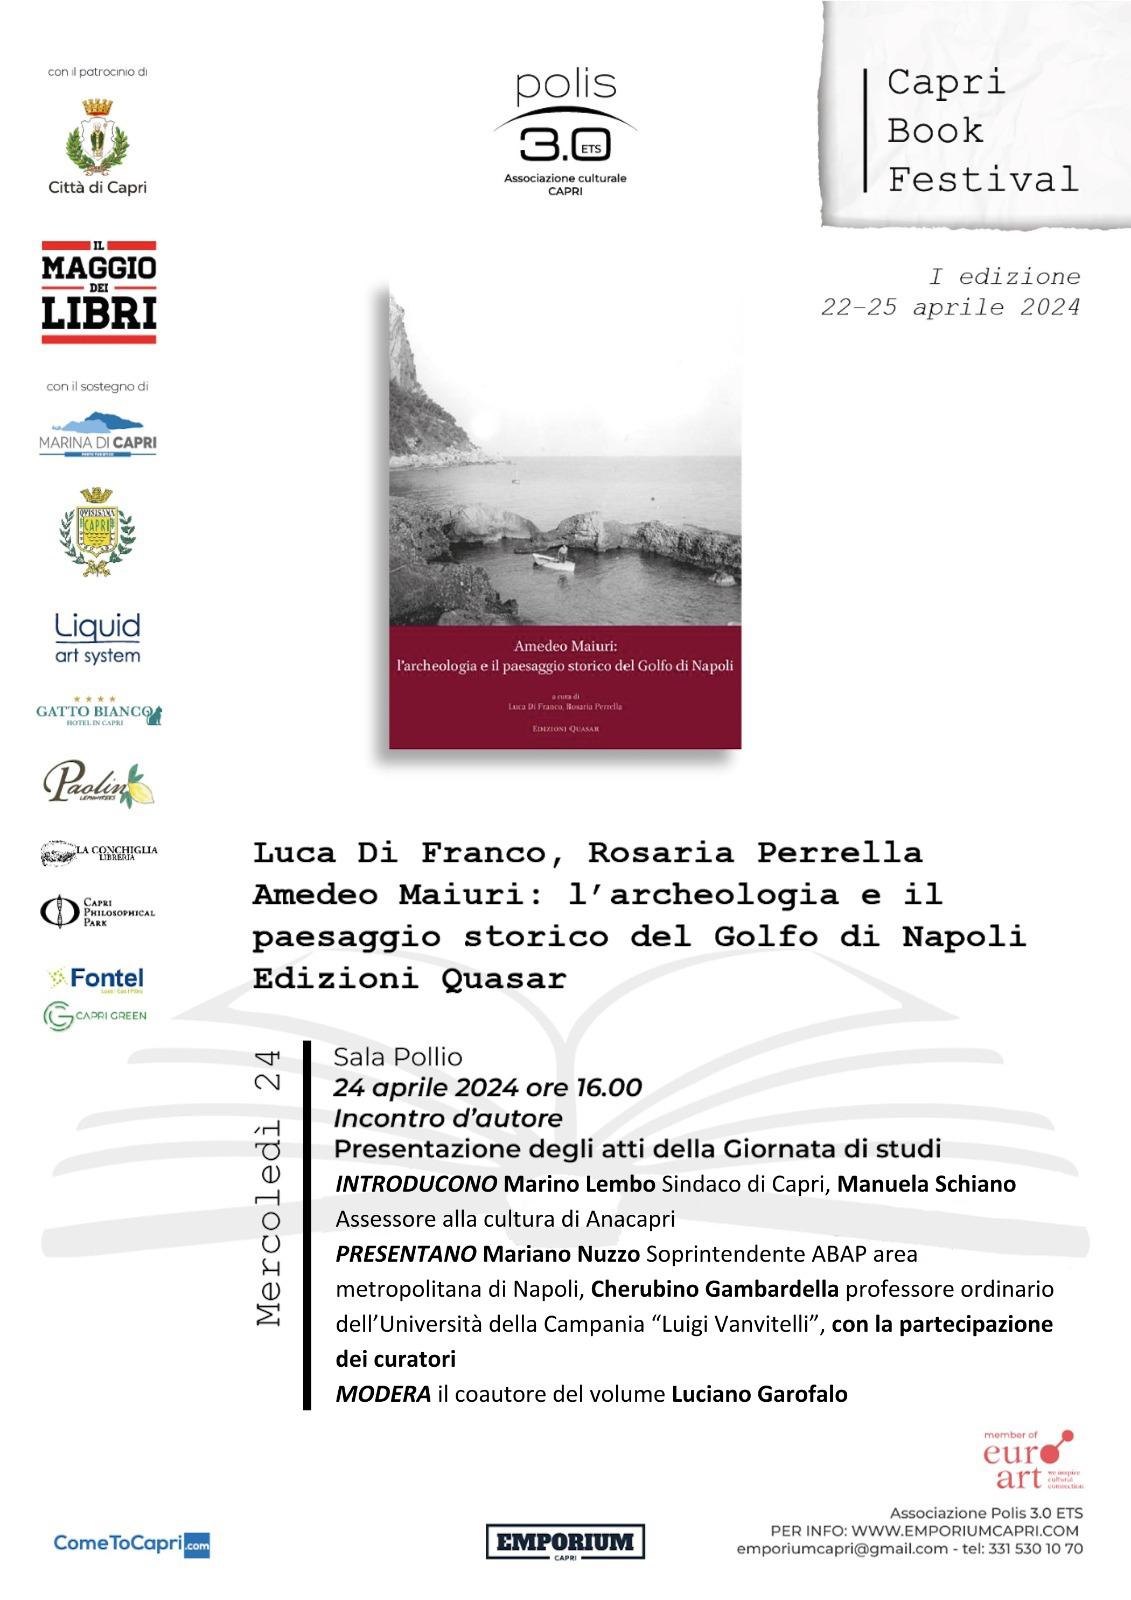 “Capri Book Festival”, presentazione degli atti della giornata di studi “Amedeo Maiuri: l’archeologia e il paesaggio storico del Golfo di Napoli”